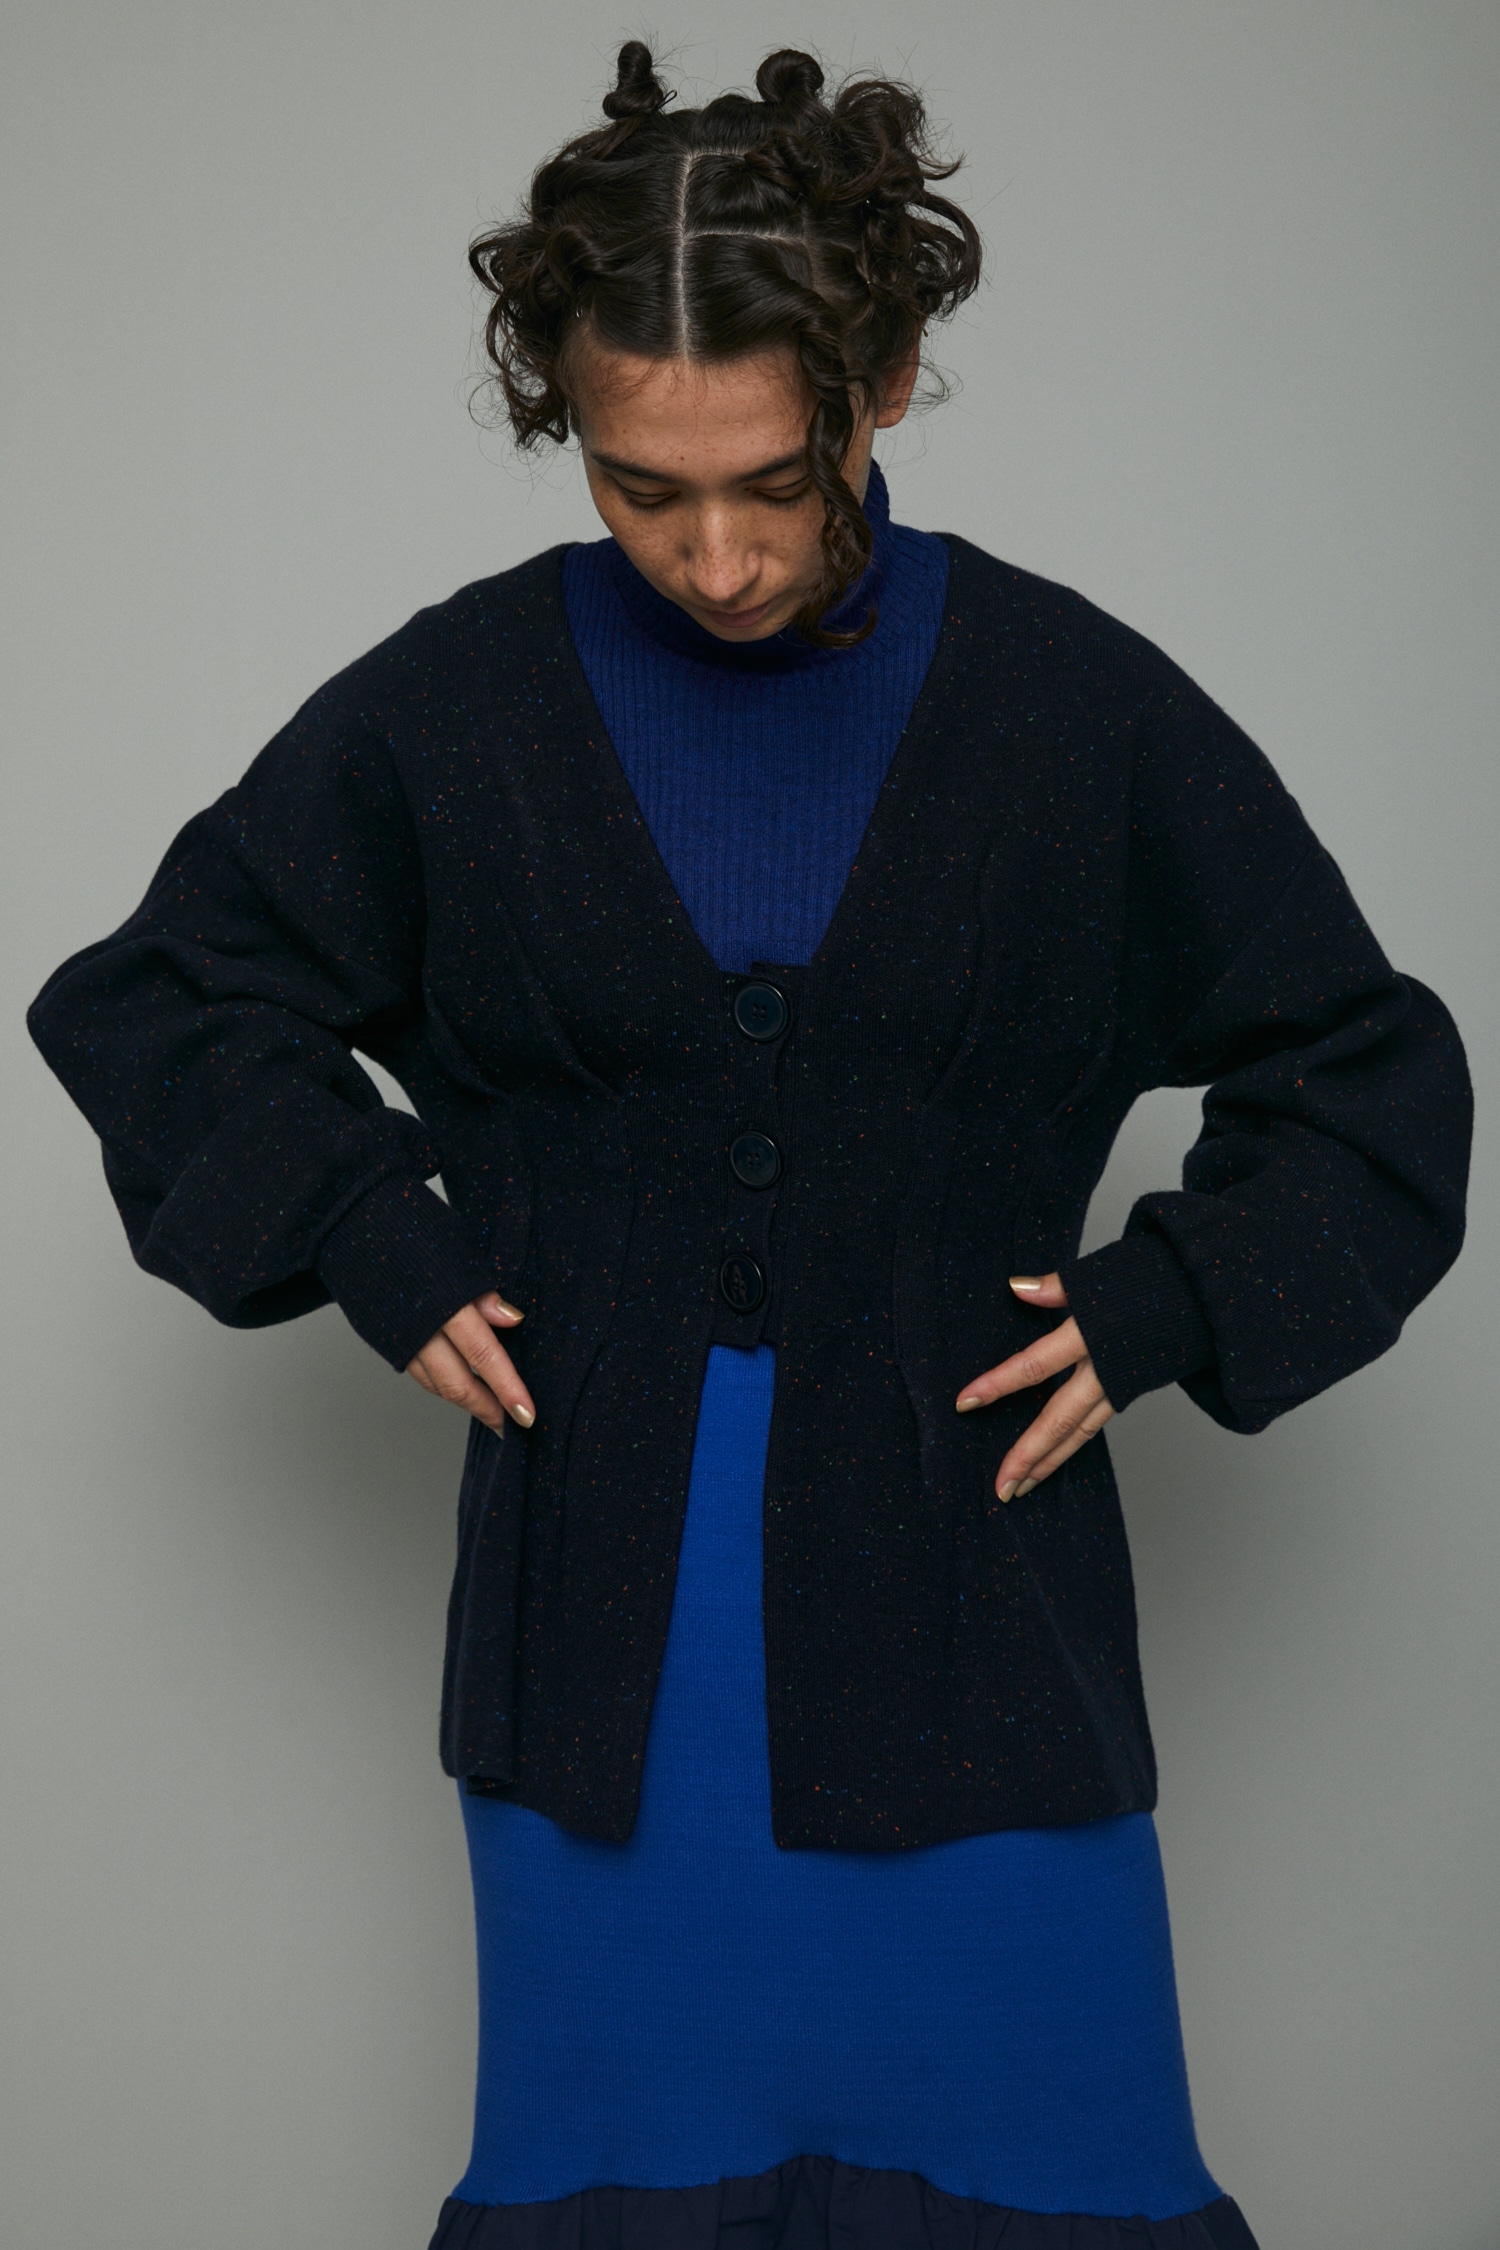 HeRIN.CYE | Nep knit cardigan (ニット ) |SHEL'TTER WEBSTORE